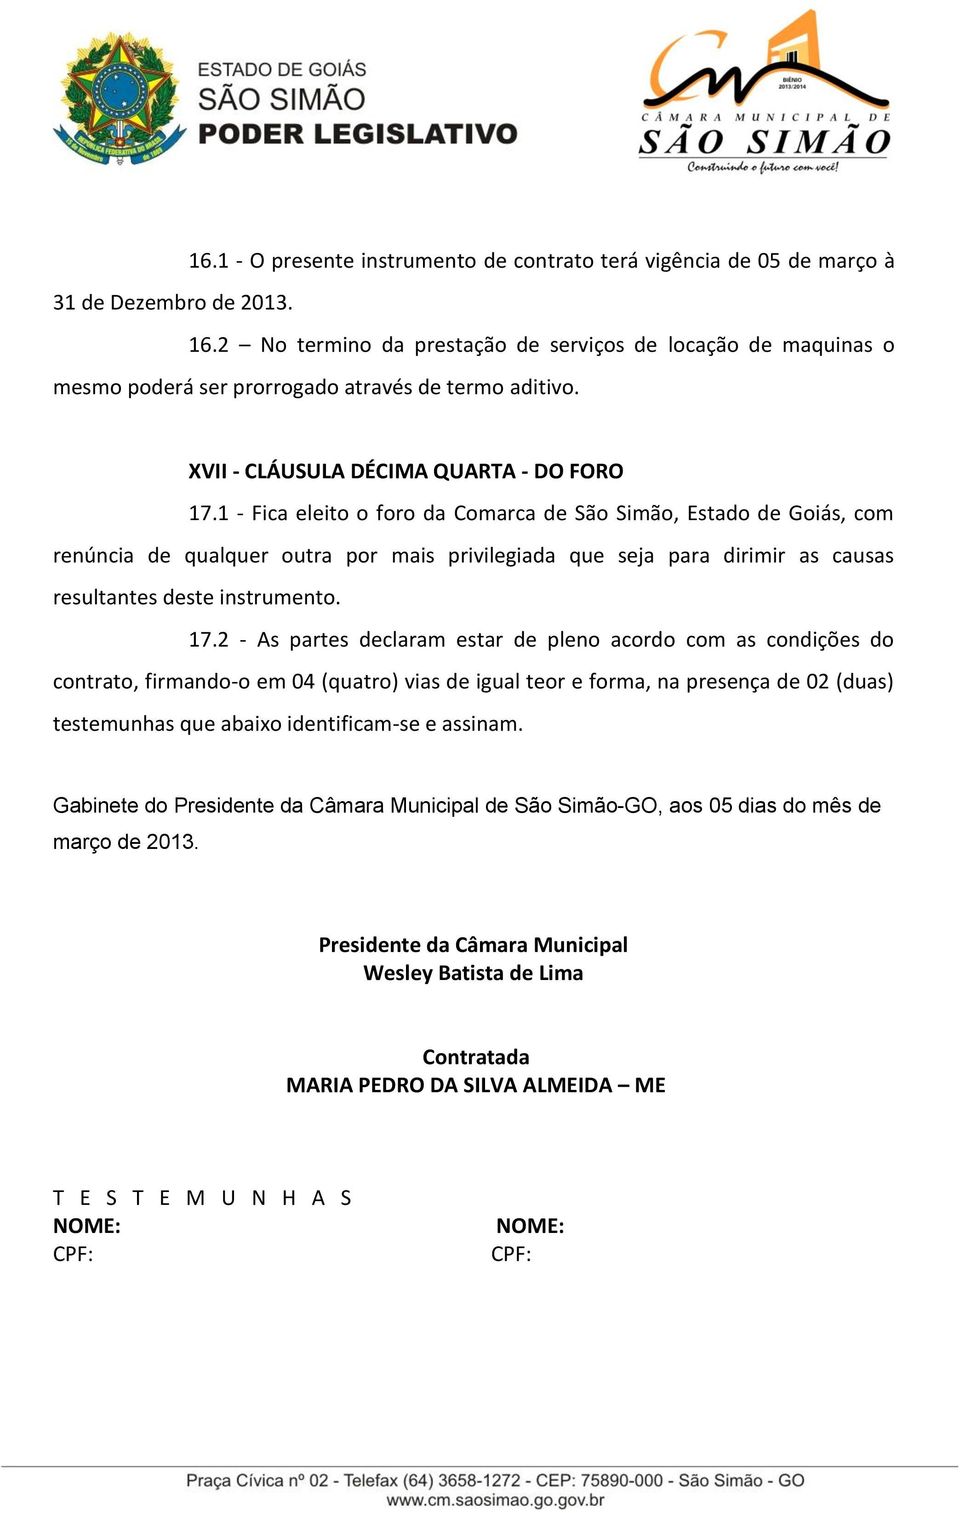 1 - Fica eleito o foro da Comarca de São Simão, Estado de Goiás, com renúncia de qualquer outra por mais privilegiada que seja para dirimir as causas resultantes deste instrumento. 17.